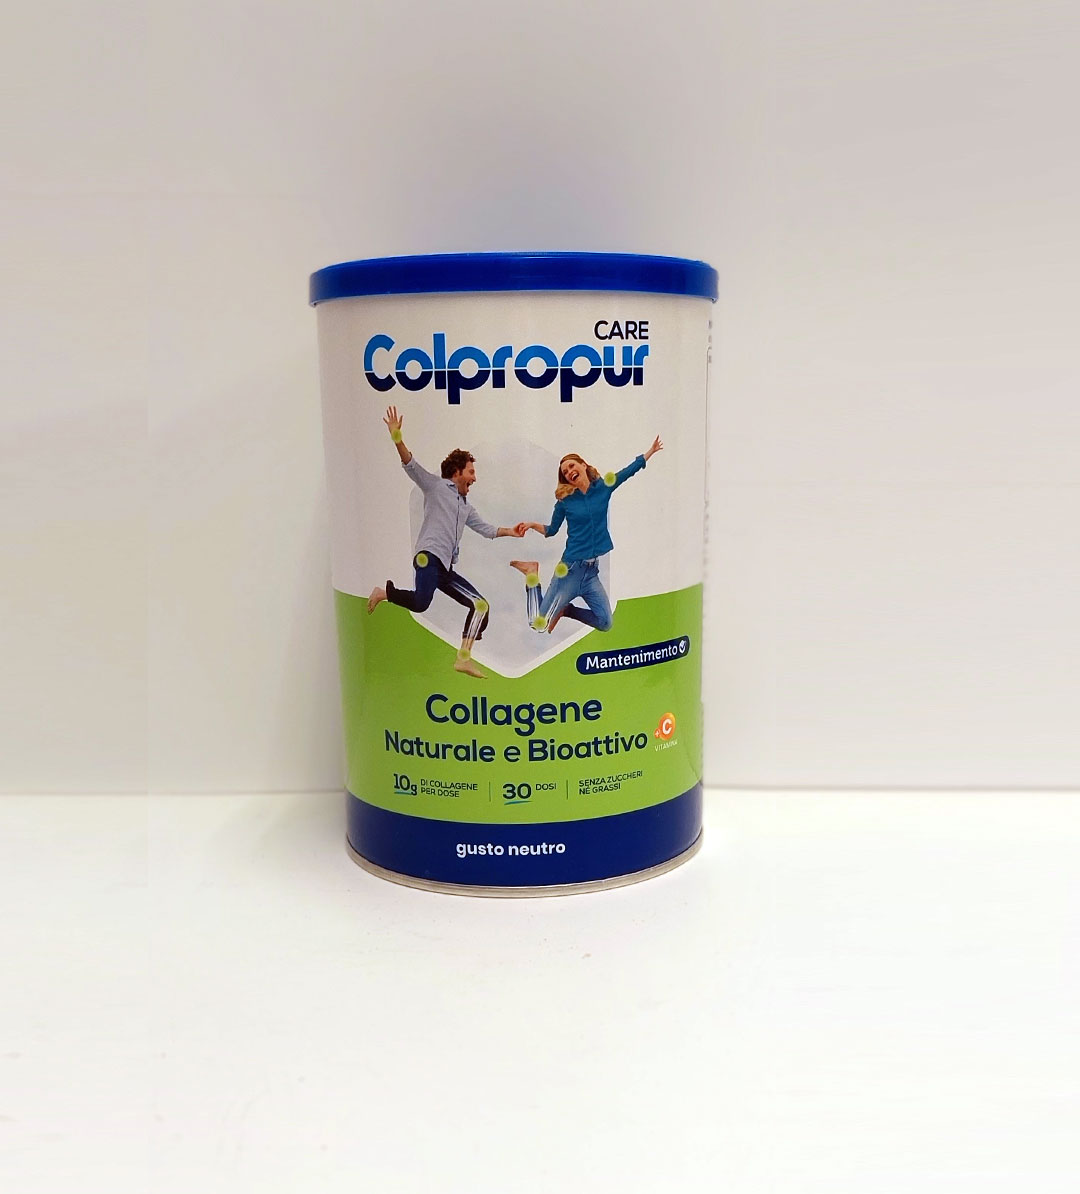 Colpropur - Collagene Naturale e Bioattivo